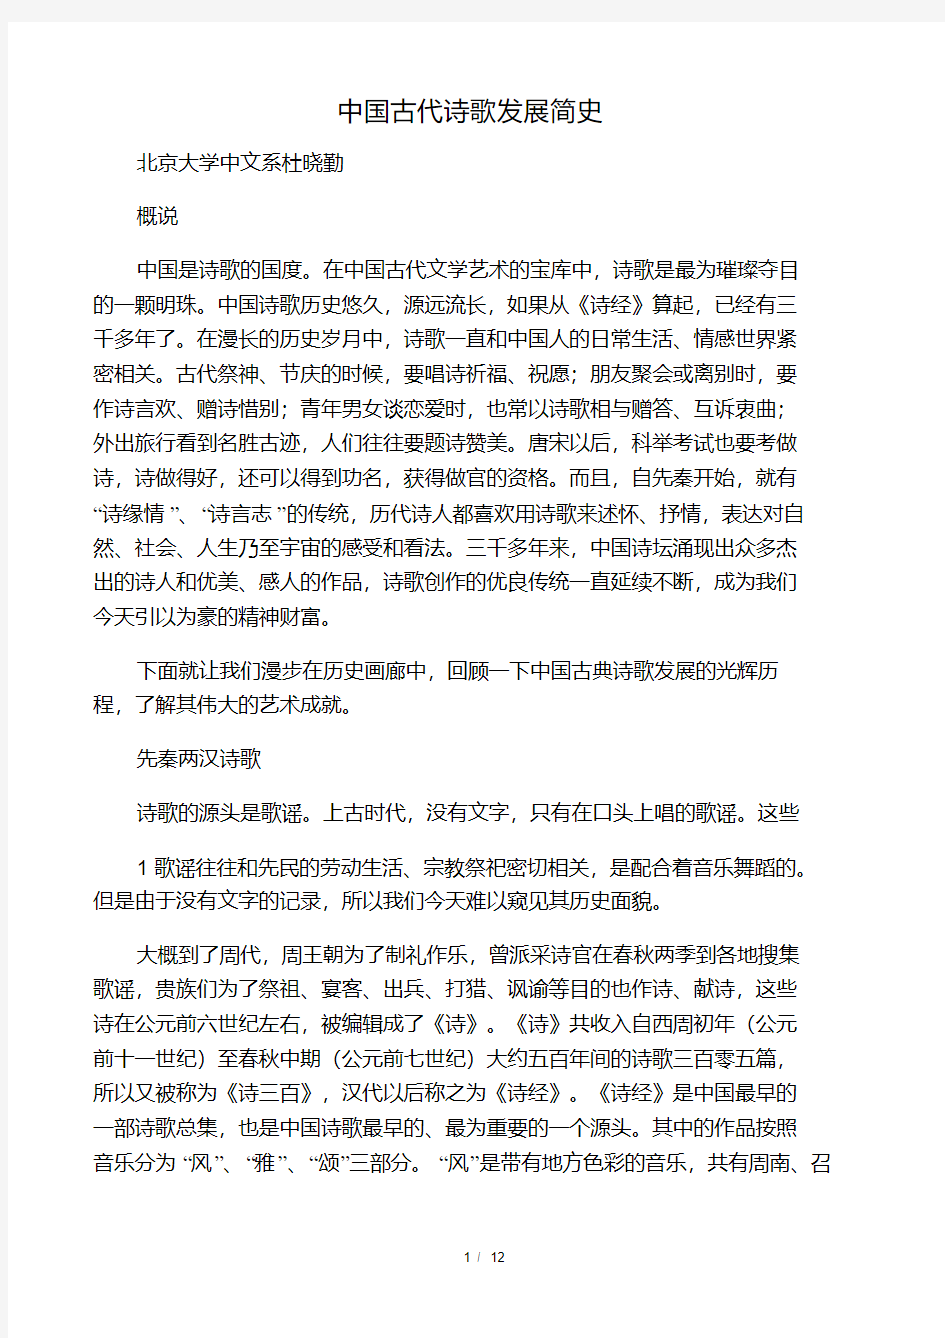 中国古代诗歌发展简史.pdf